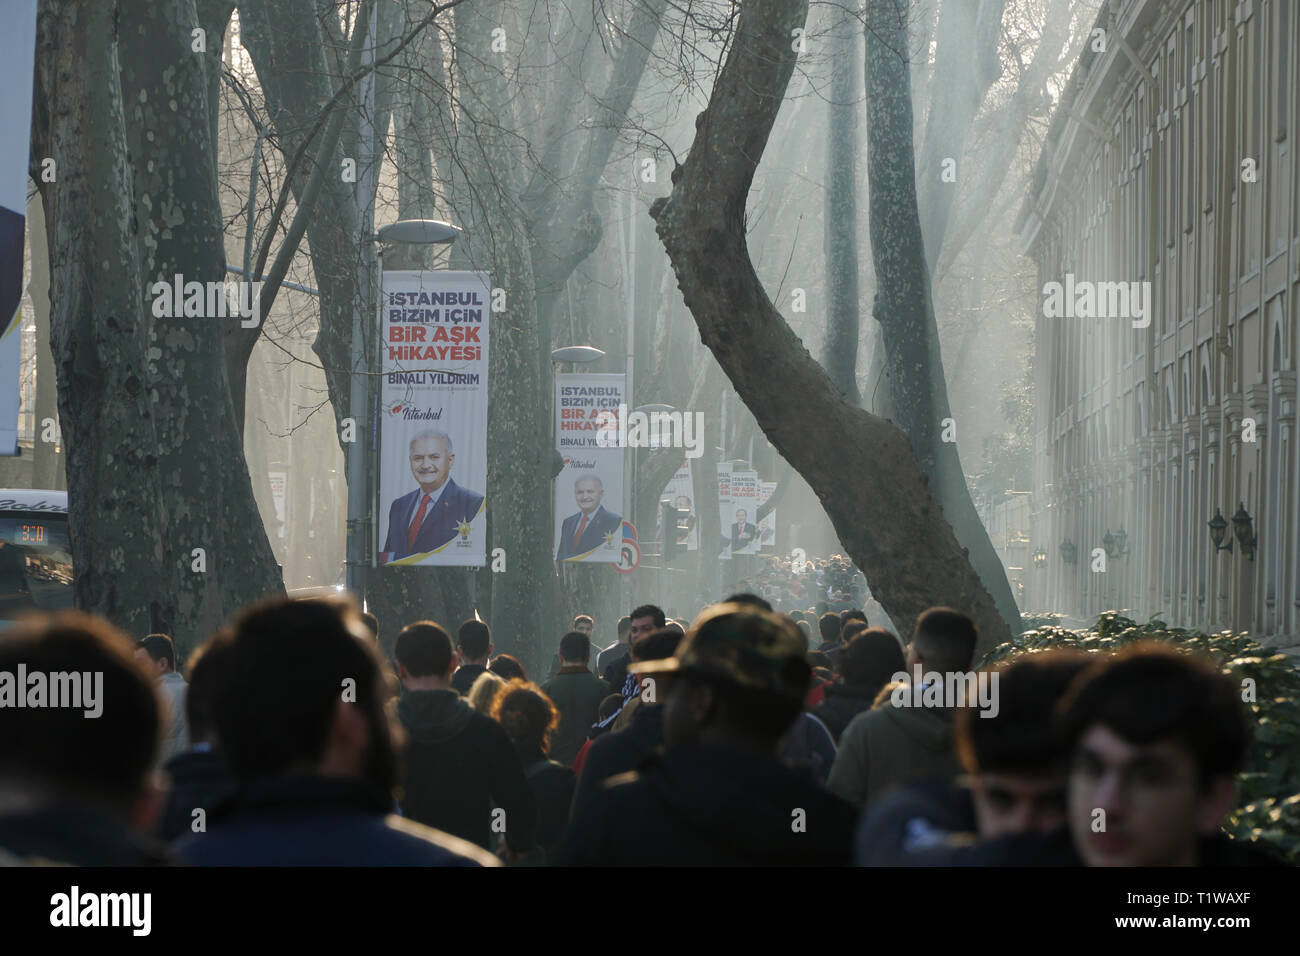 Istanbul, Turquie - 10 mars 2019 : Beaucoup de gens marcher sous les arbres et les bannières de l'AKP au quartier de Besiktas. Élections municipales seront faites à la Turquie. Banque D'Images